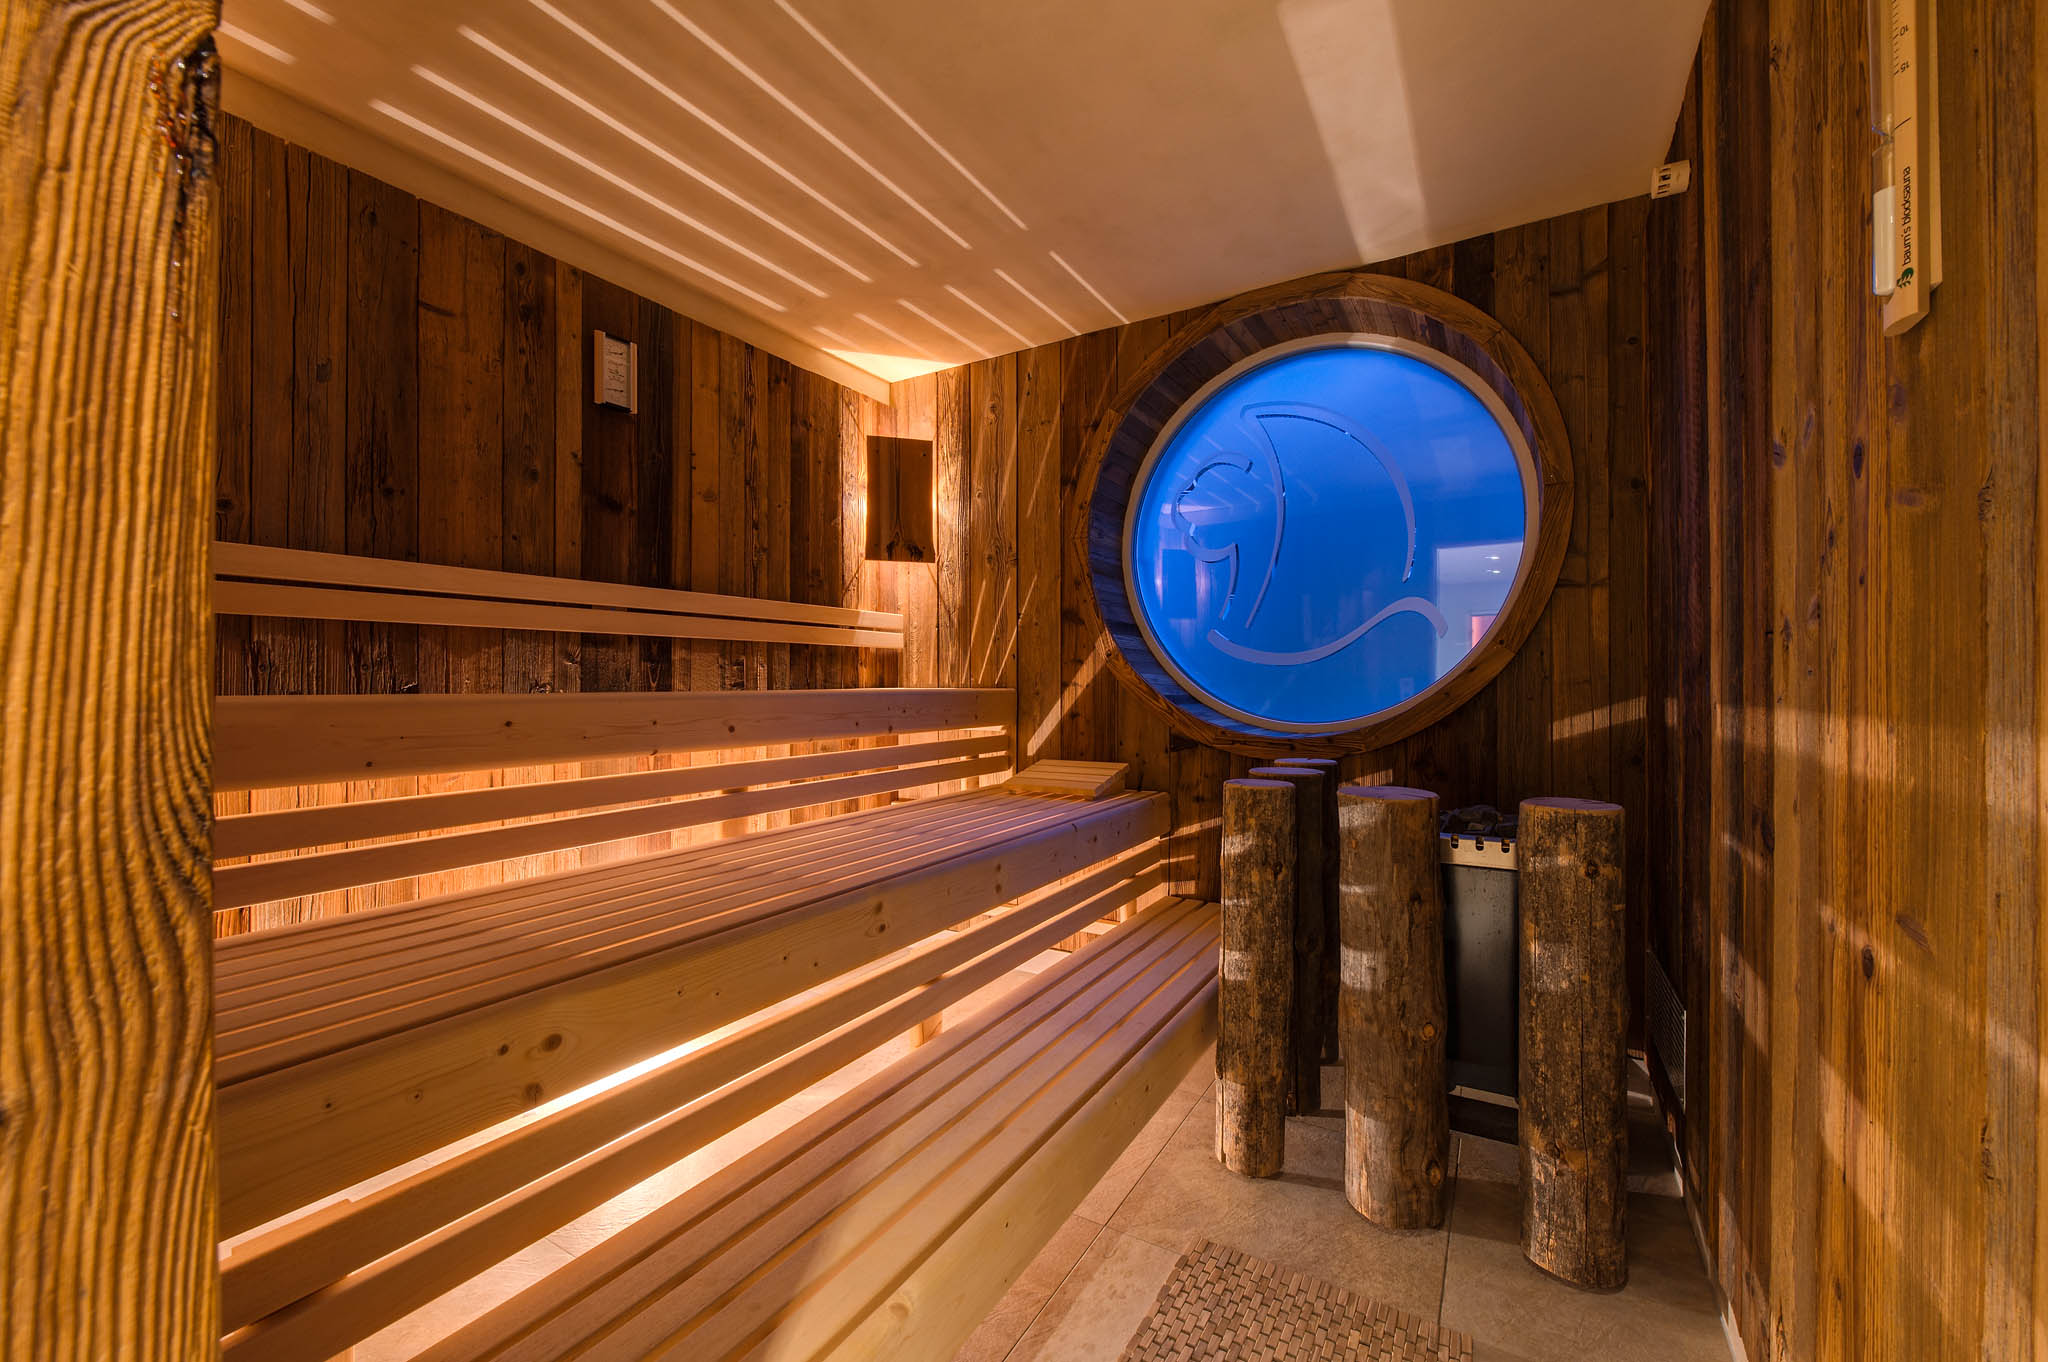 Das Bild zeigt die Saune im Wellness-Bereich vom Hotel ERholung. Man sieht viel Holz und im Hointergrund ein Ficht durchsichtiges Fenster mit dem Logo des Hotels.